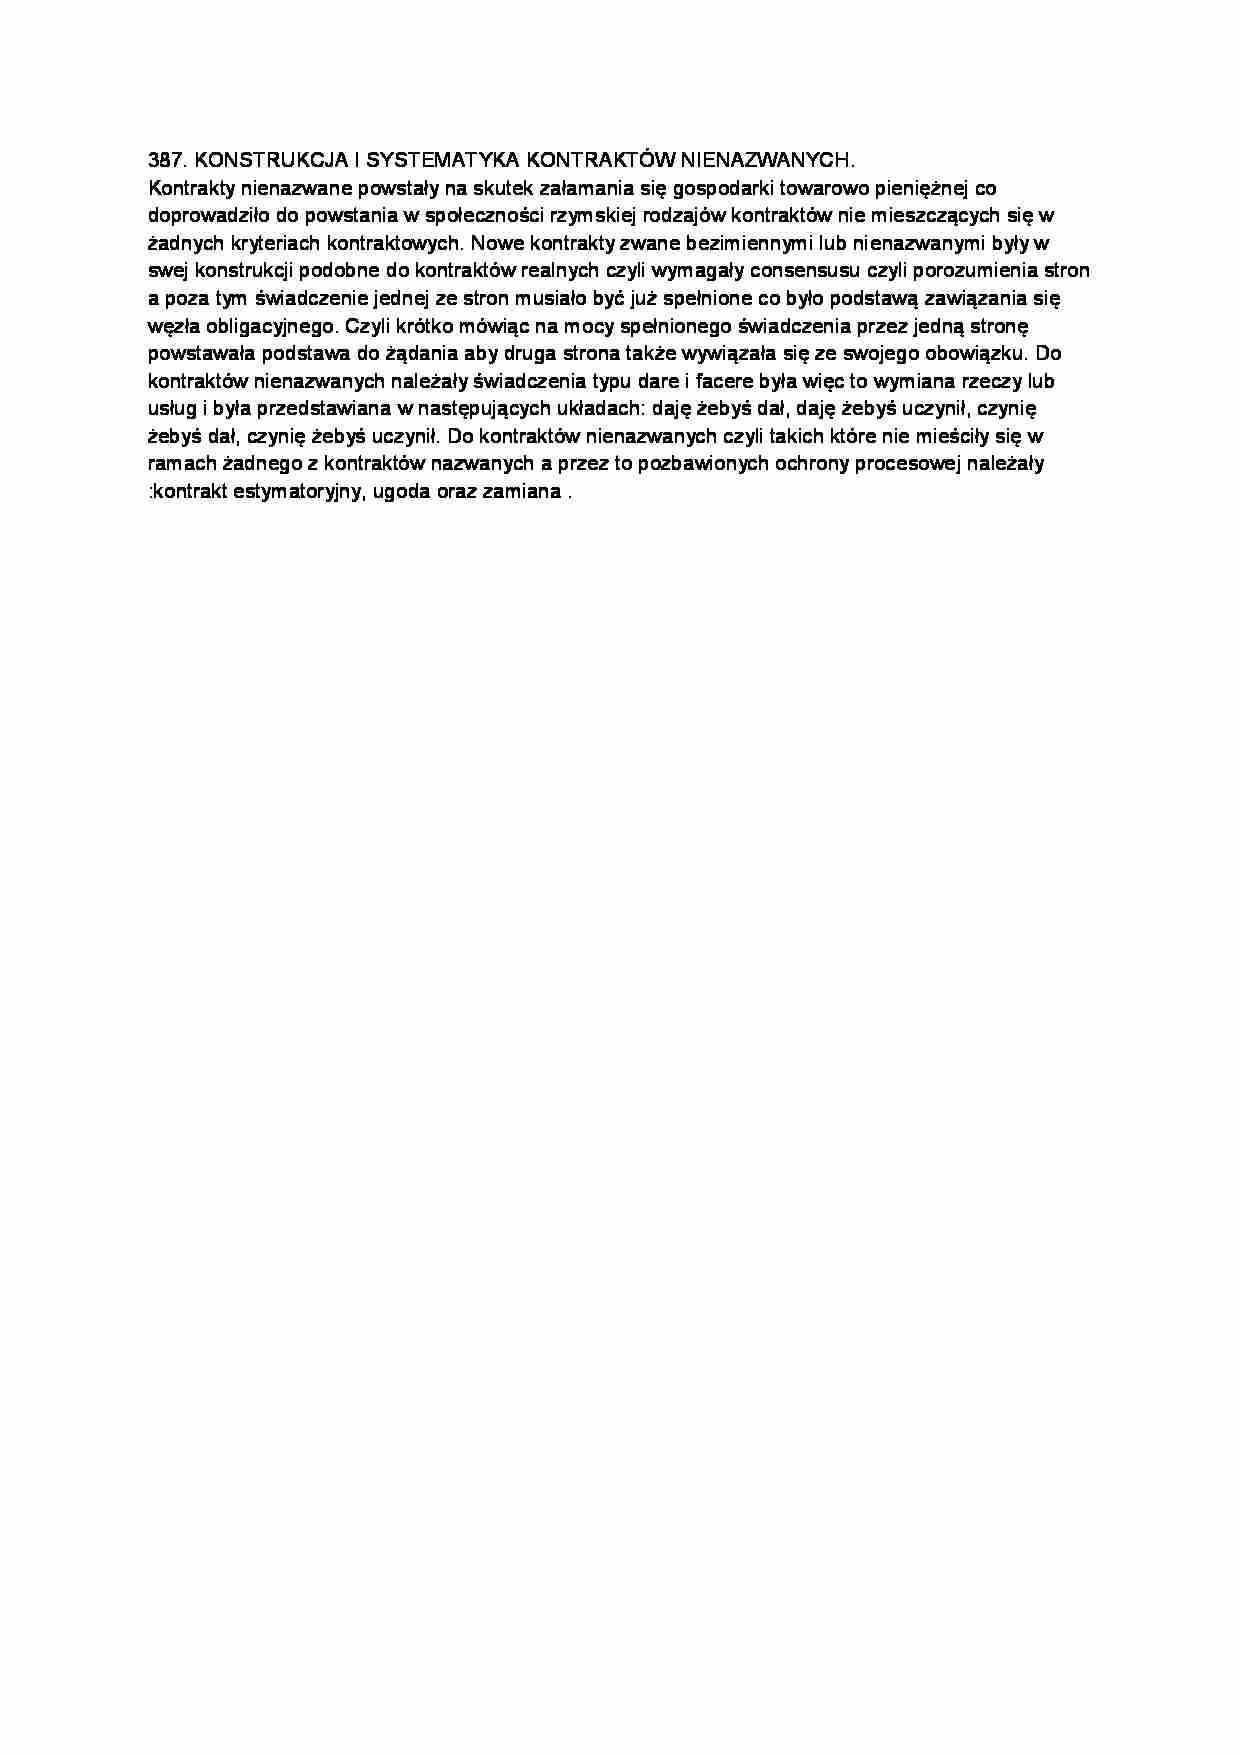 Konstrukcja i systematyka kontraktów nienazwanych-opracowanie - strona 1